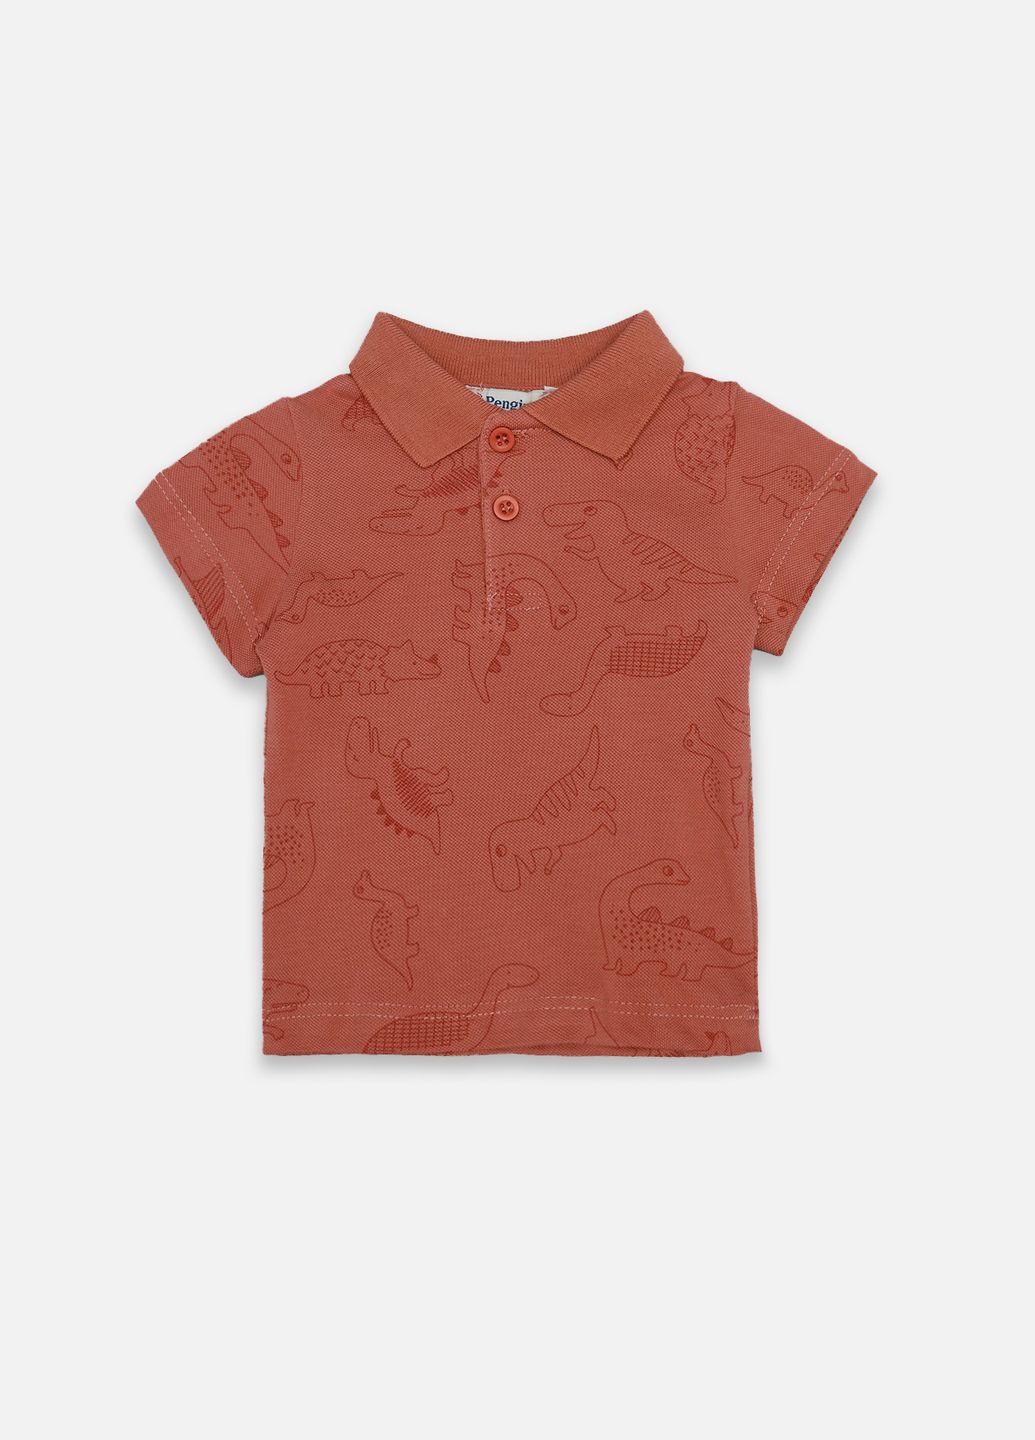 Коричневая детская футболка-футболка-поло с коротким рукавом для мальчика цвет терракотовый цб-00247461 для мальчика Pengim